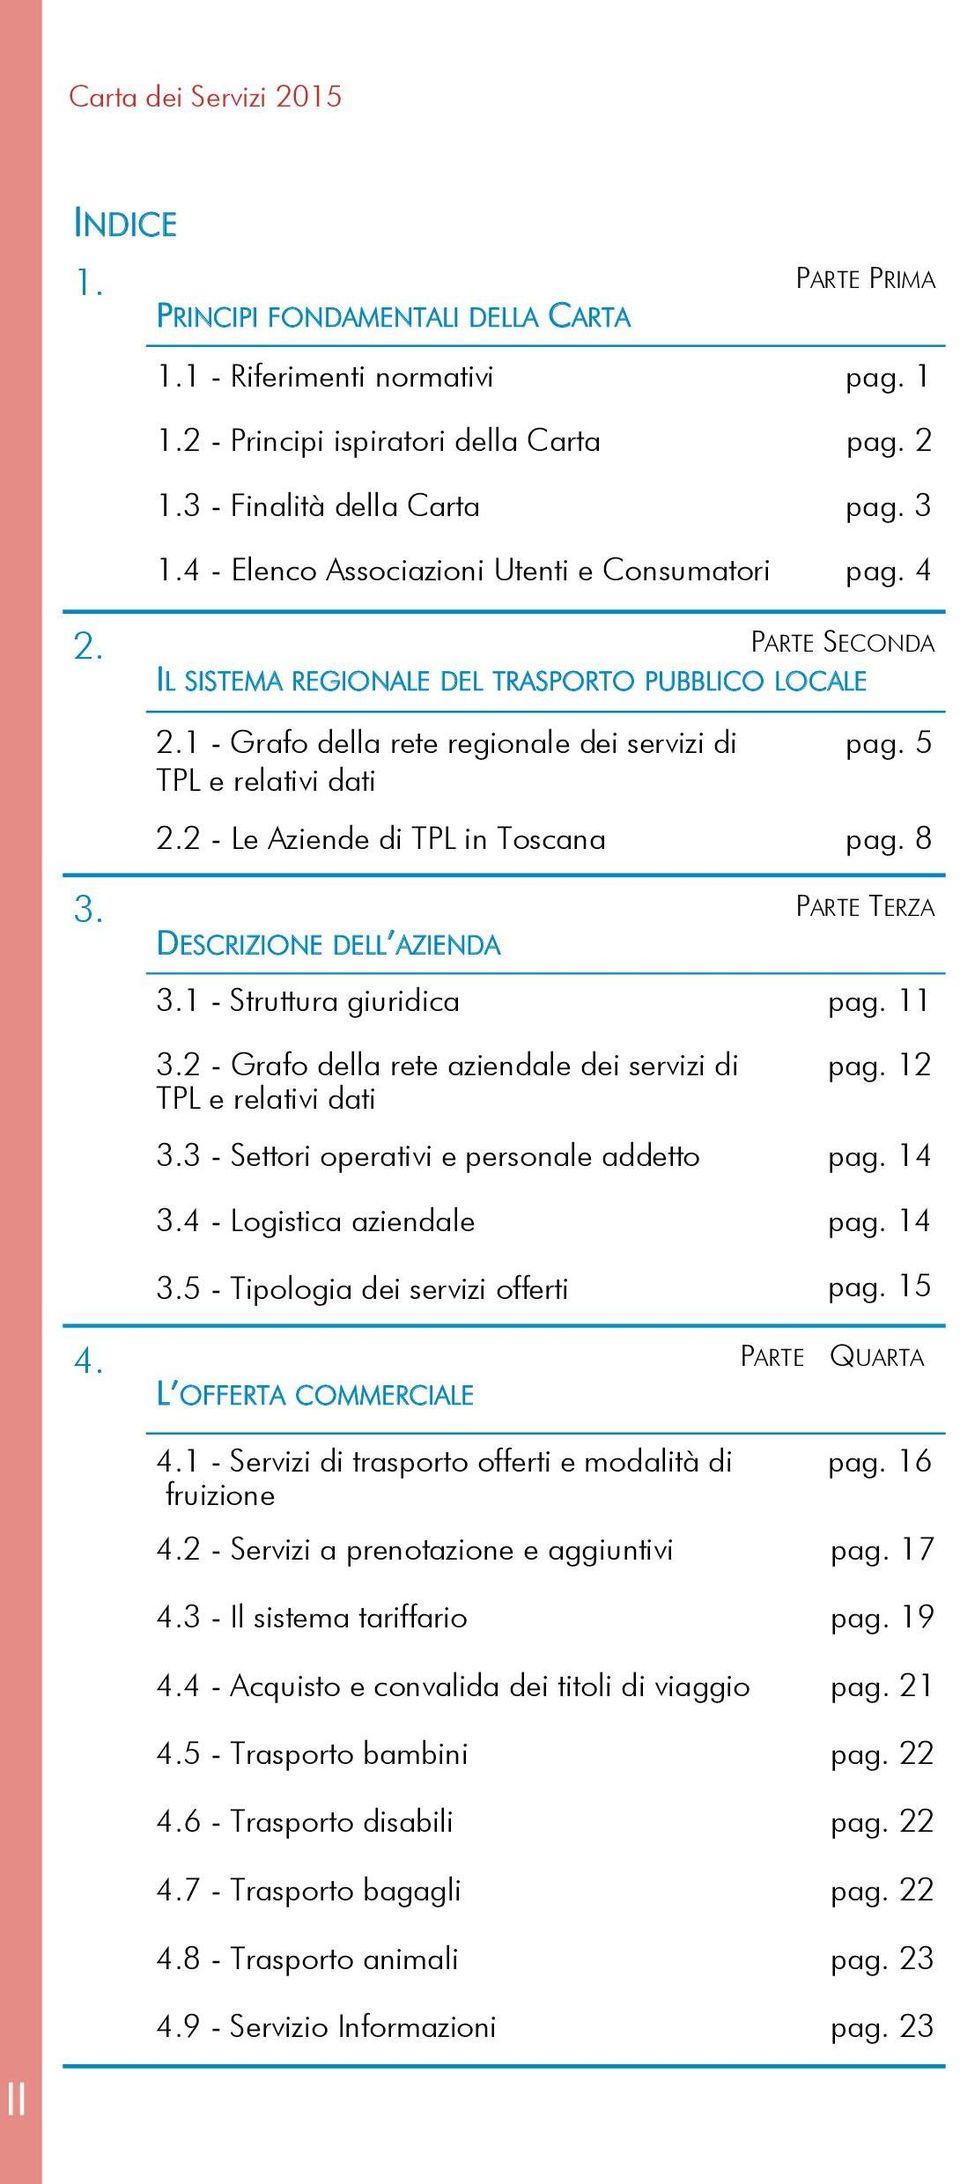 2 - Le Aziende di TPL in Toscana pag. 8 3. PARTE TERZA DESCRIZIONE DELL AZIENDA 3.1 - Struttura giuridica pag. 11 3.2 - Grafo della rete aziendale dei servizi di TPL e relativi dati pag. 12 3.